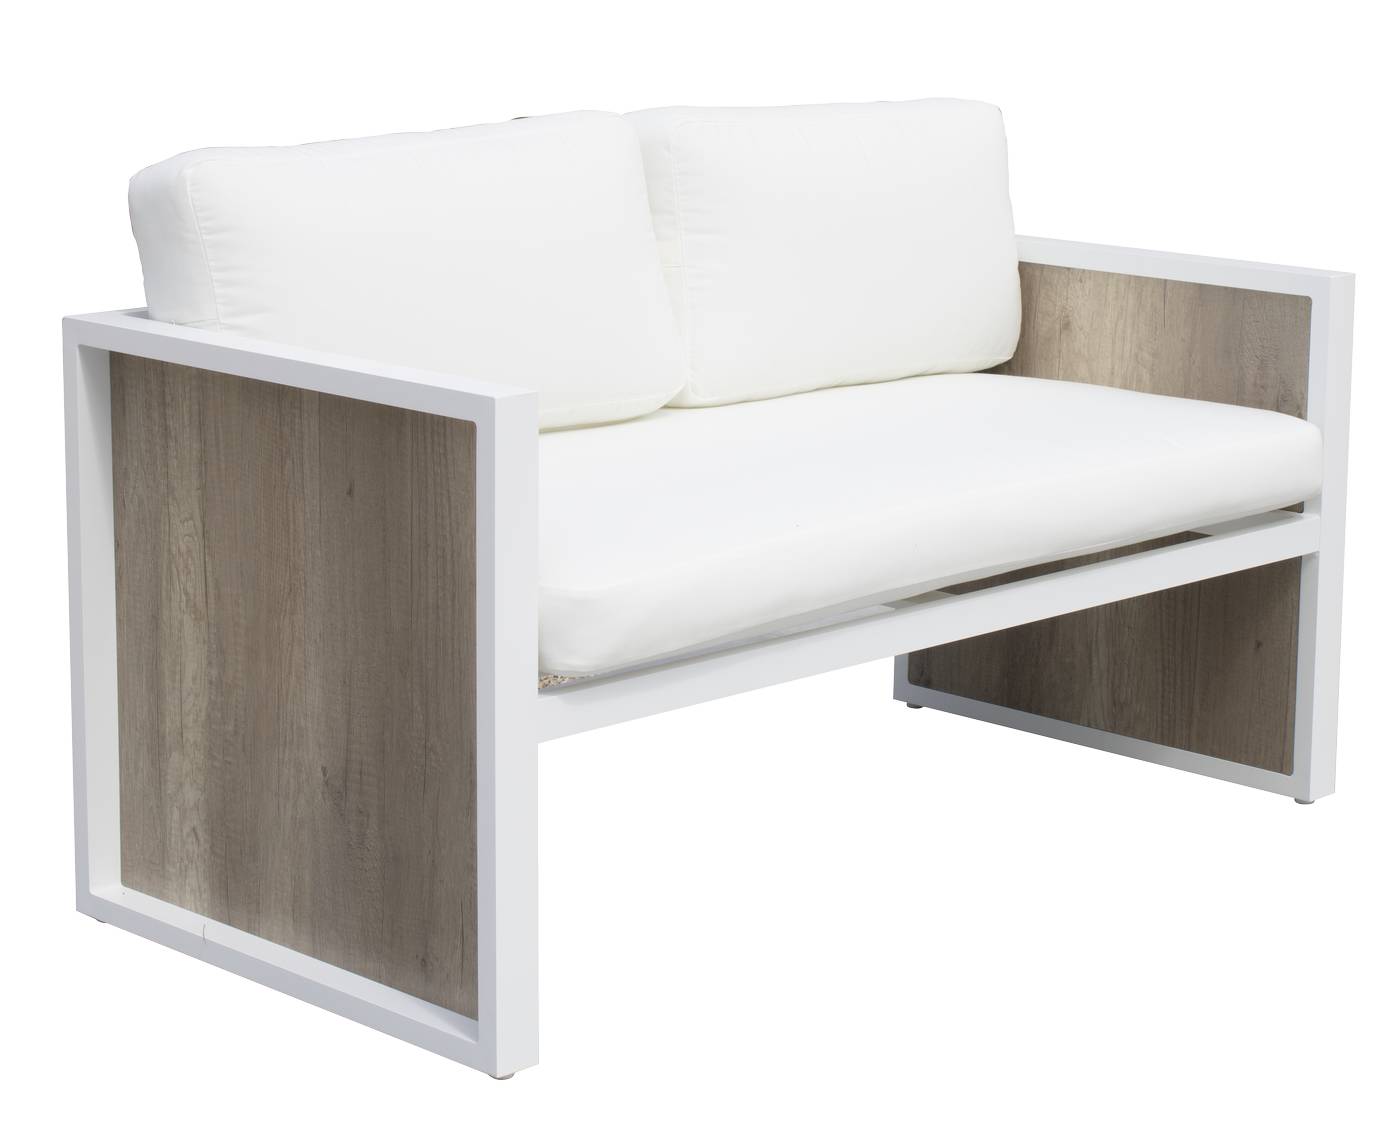 Set aluminio: sofá 2p + sillones + mesa [Ainara] - Conjunto de alumino para jardín color blanco y HPL color maderma: sofá 2 plazas + 2 sillones + 1 mesa de centro.